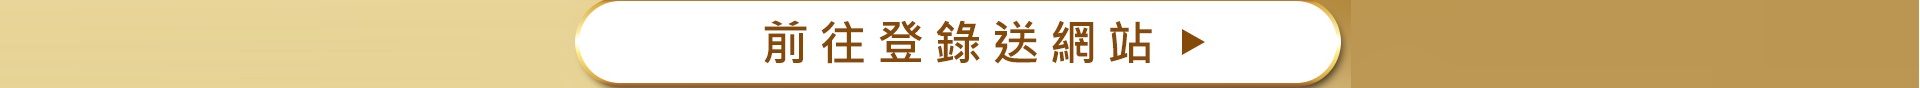 滿版banner